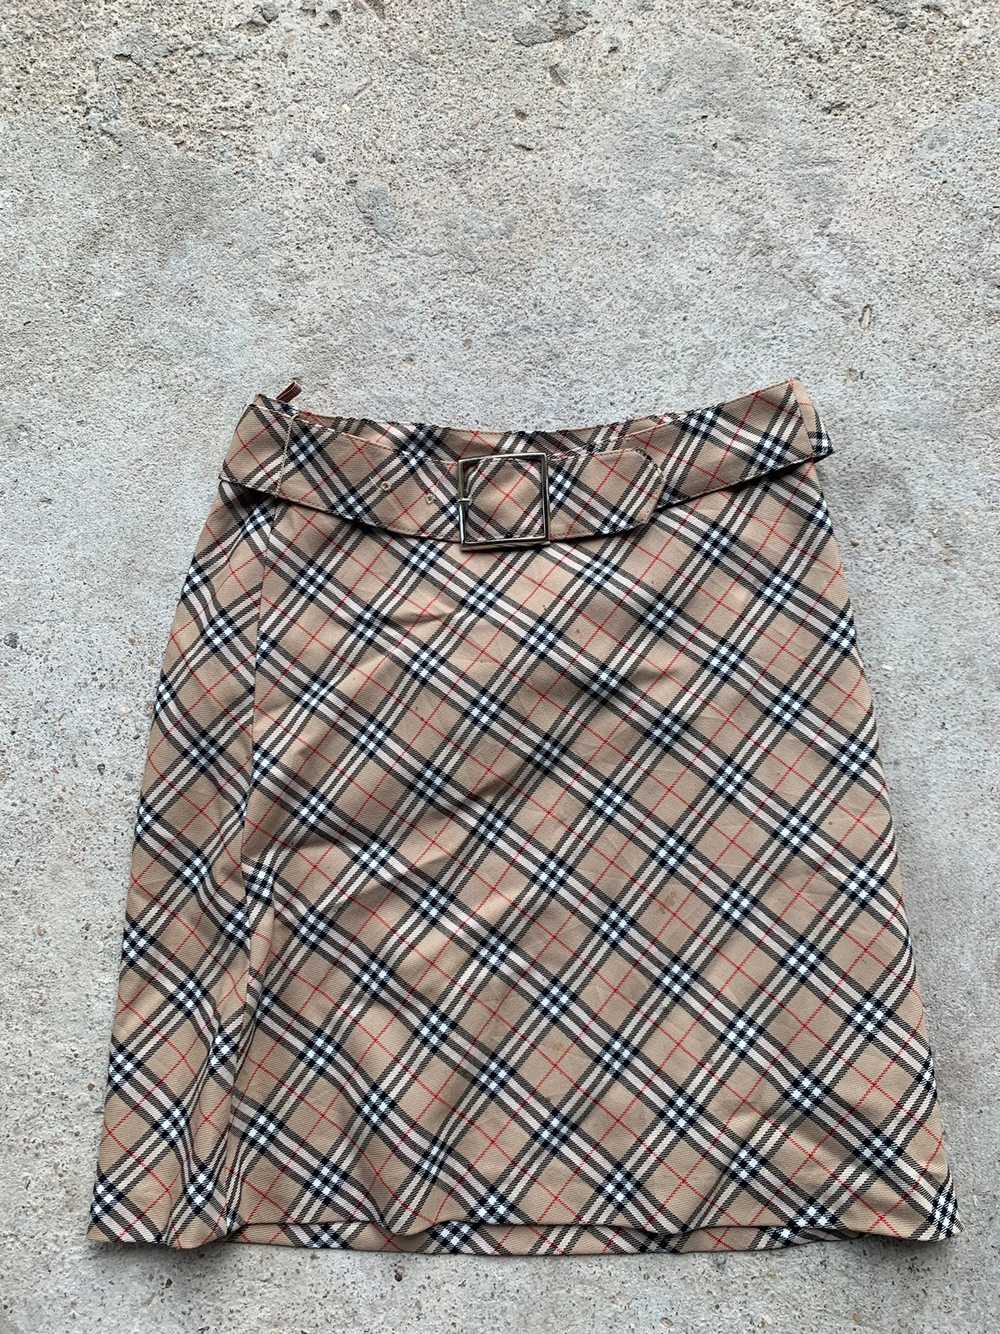 Vintage - 90s Nova Check Burberry Skirt - image 1